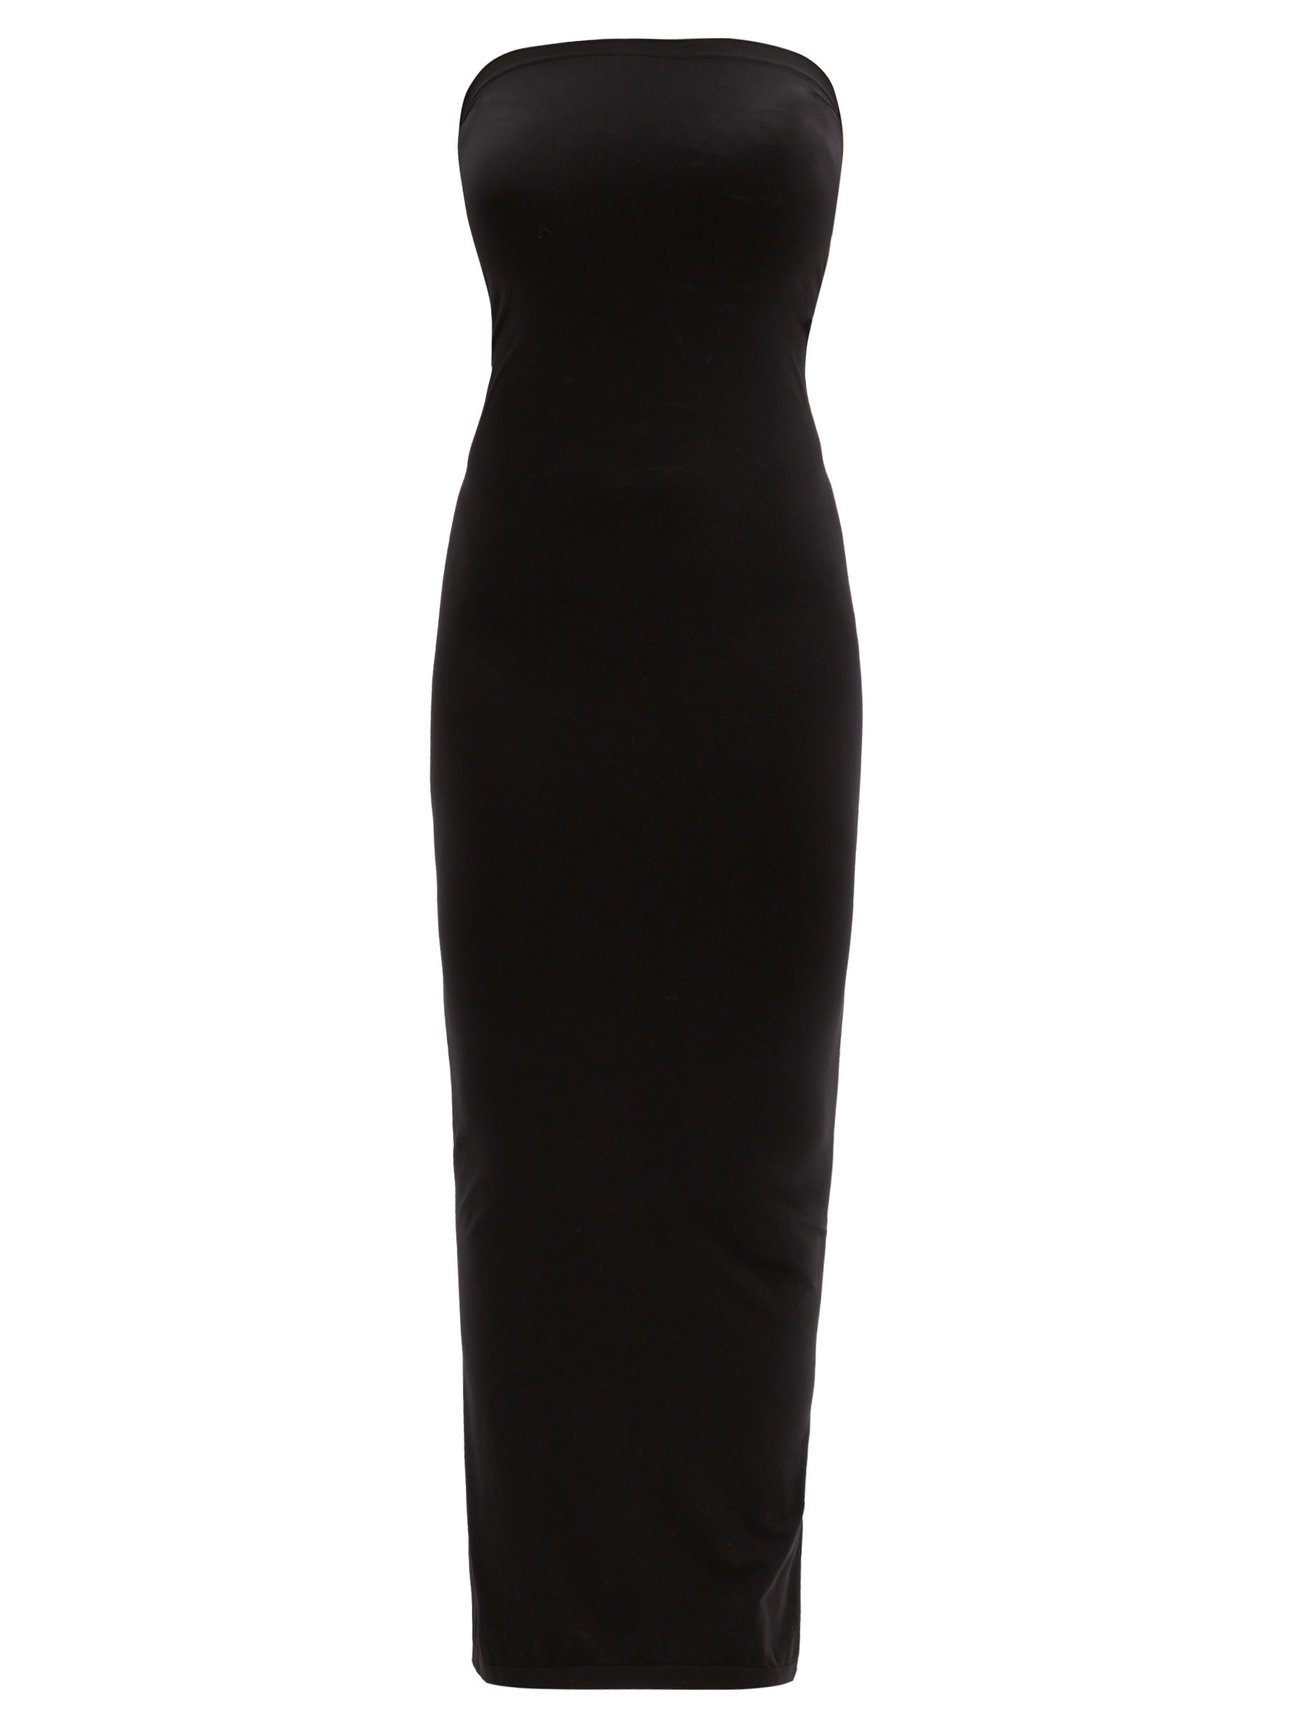 Wolford Blake Dress Size: 8 EU 38 Color: Black 52768 - 53